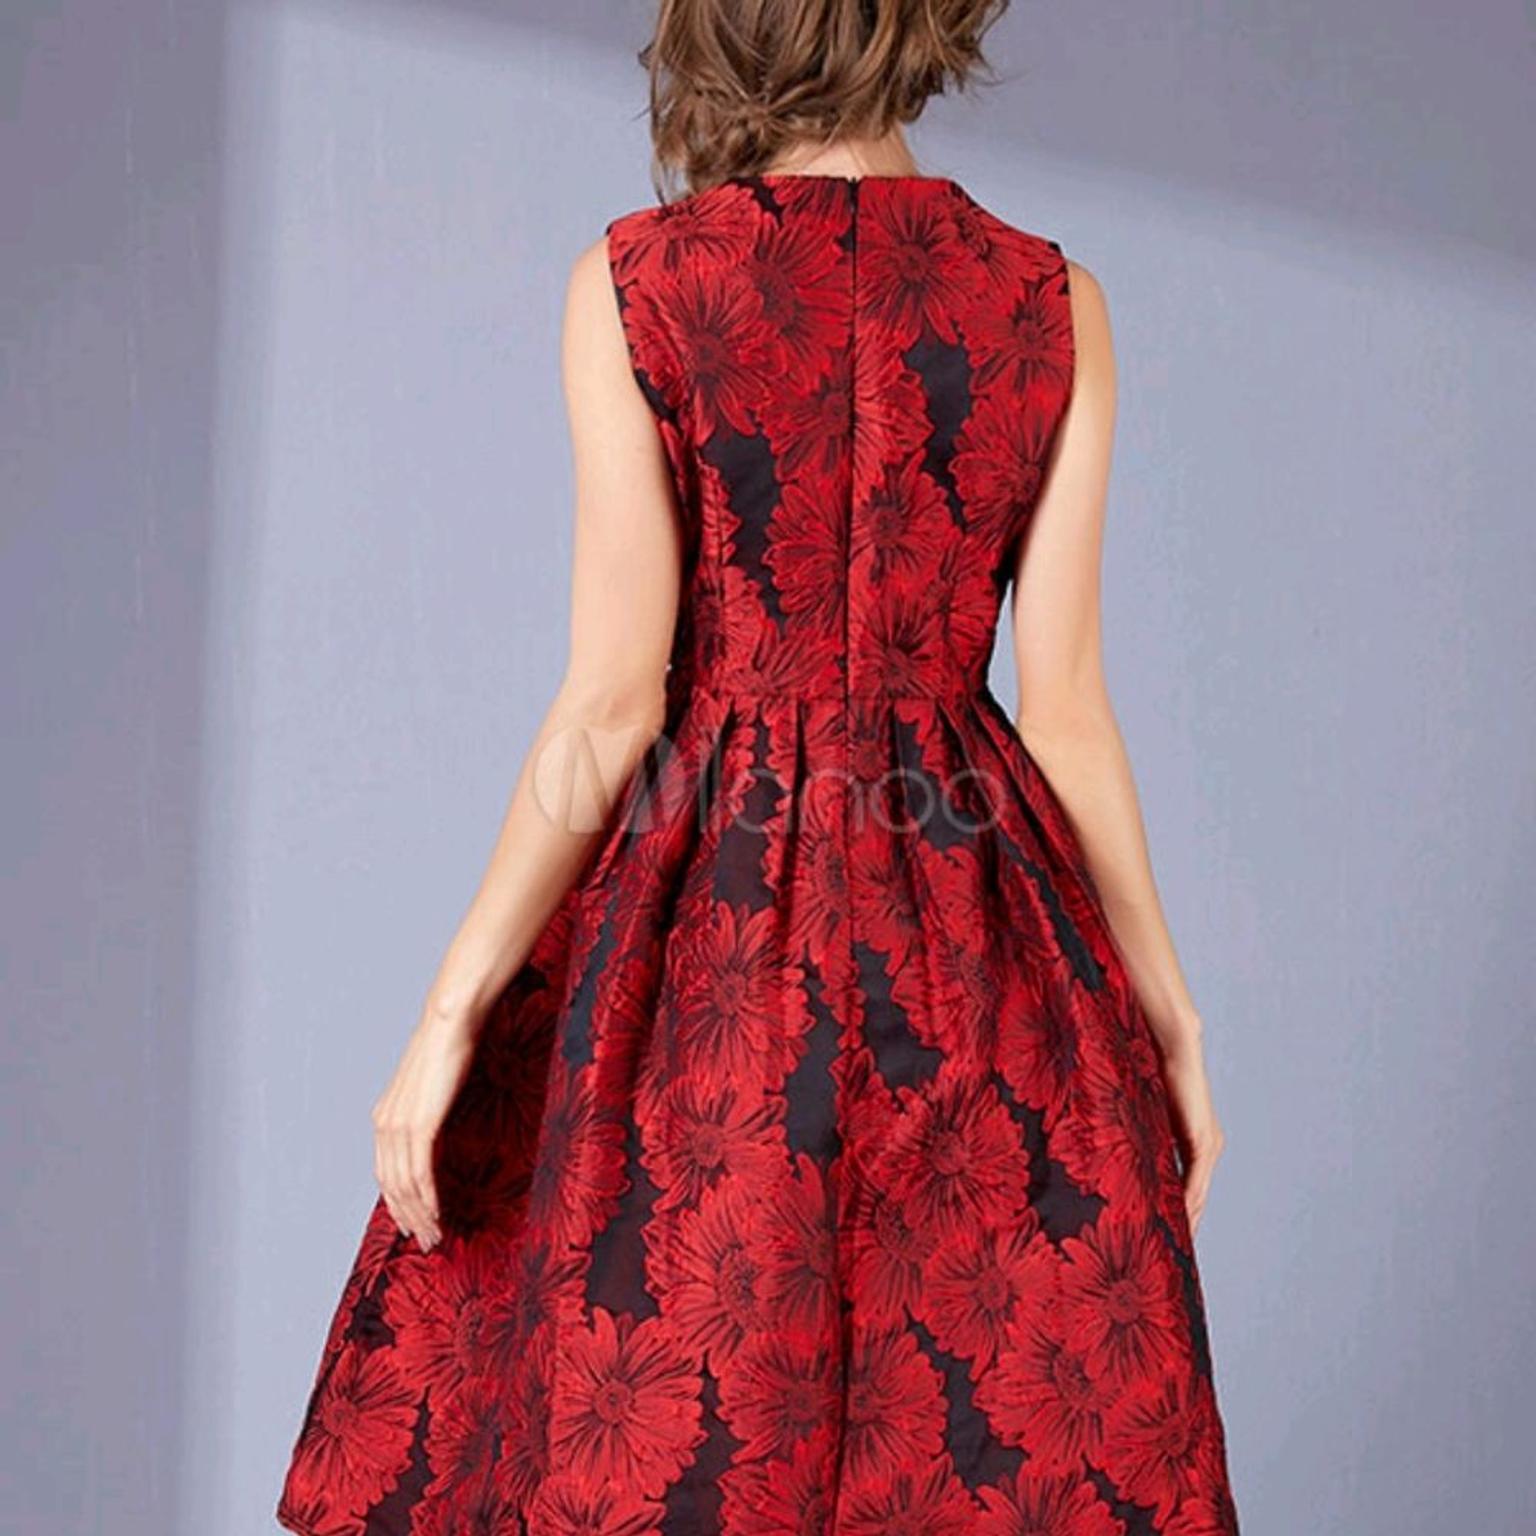 Kleid Mit Seitentaschen In 9500 Villach For 35 00 For Sale Shpock